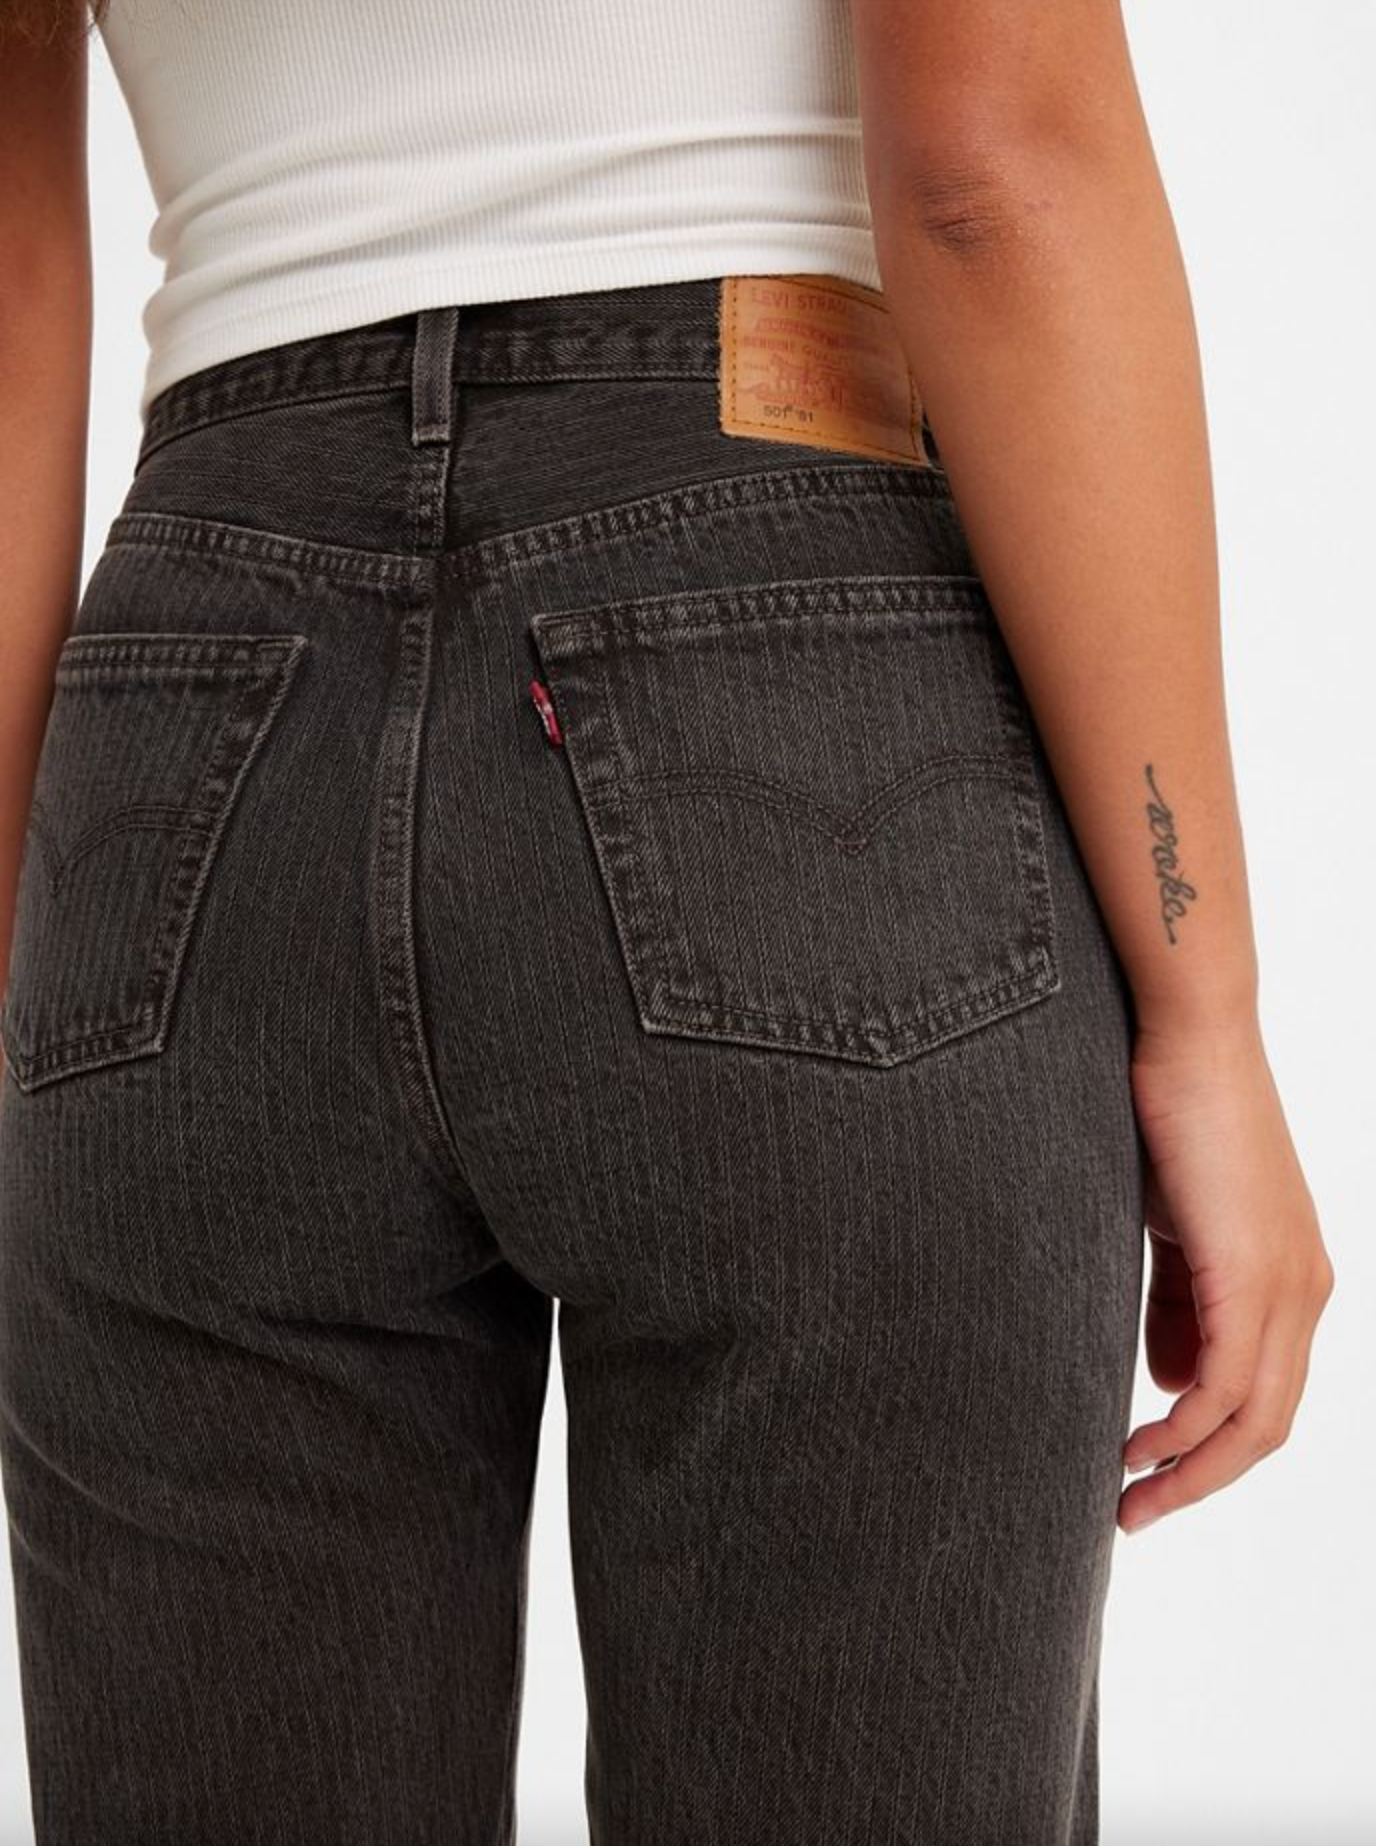 Levi's 501 '81 Women's Jeans - Maude